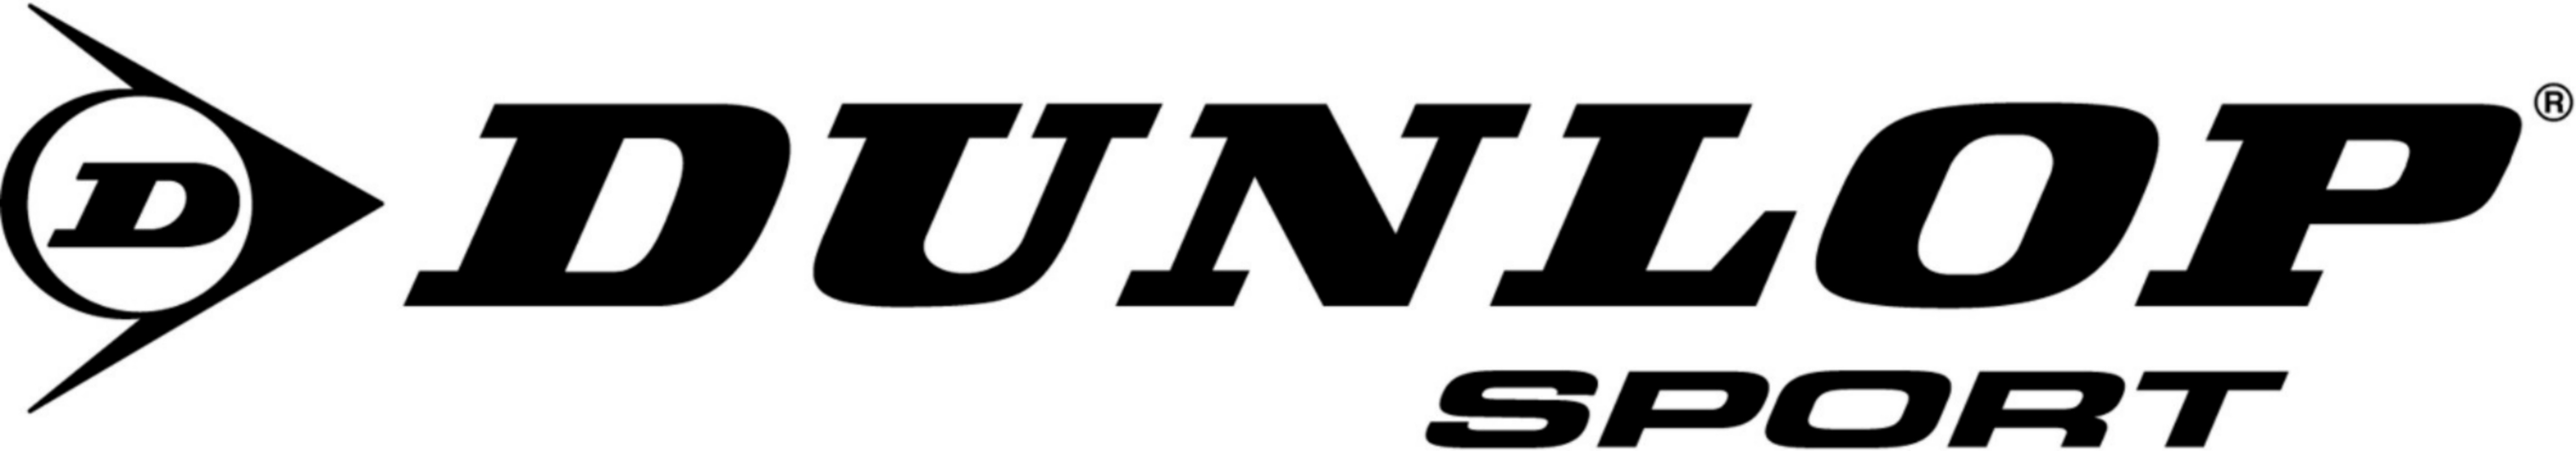 Dunlop Sport logo